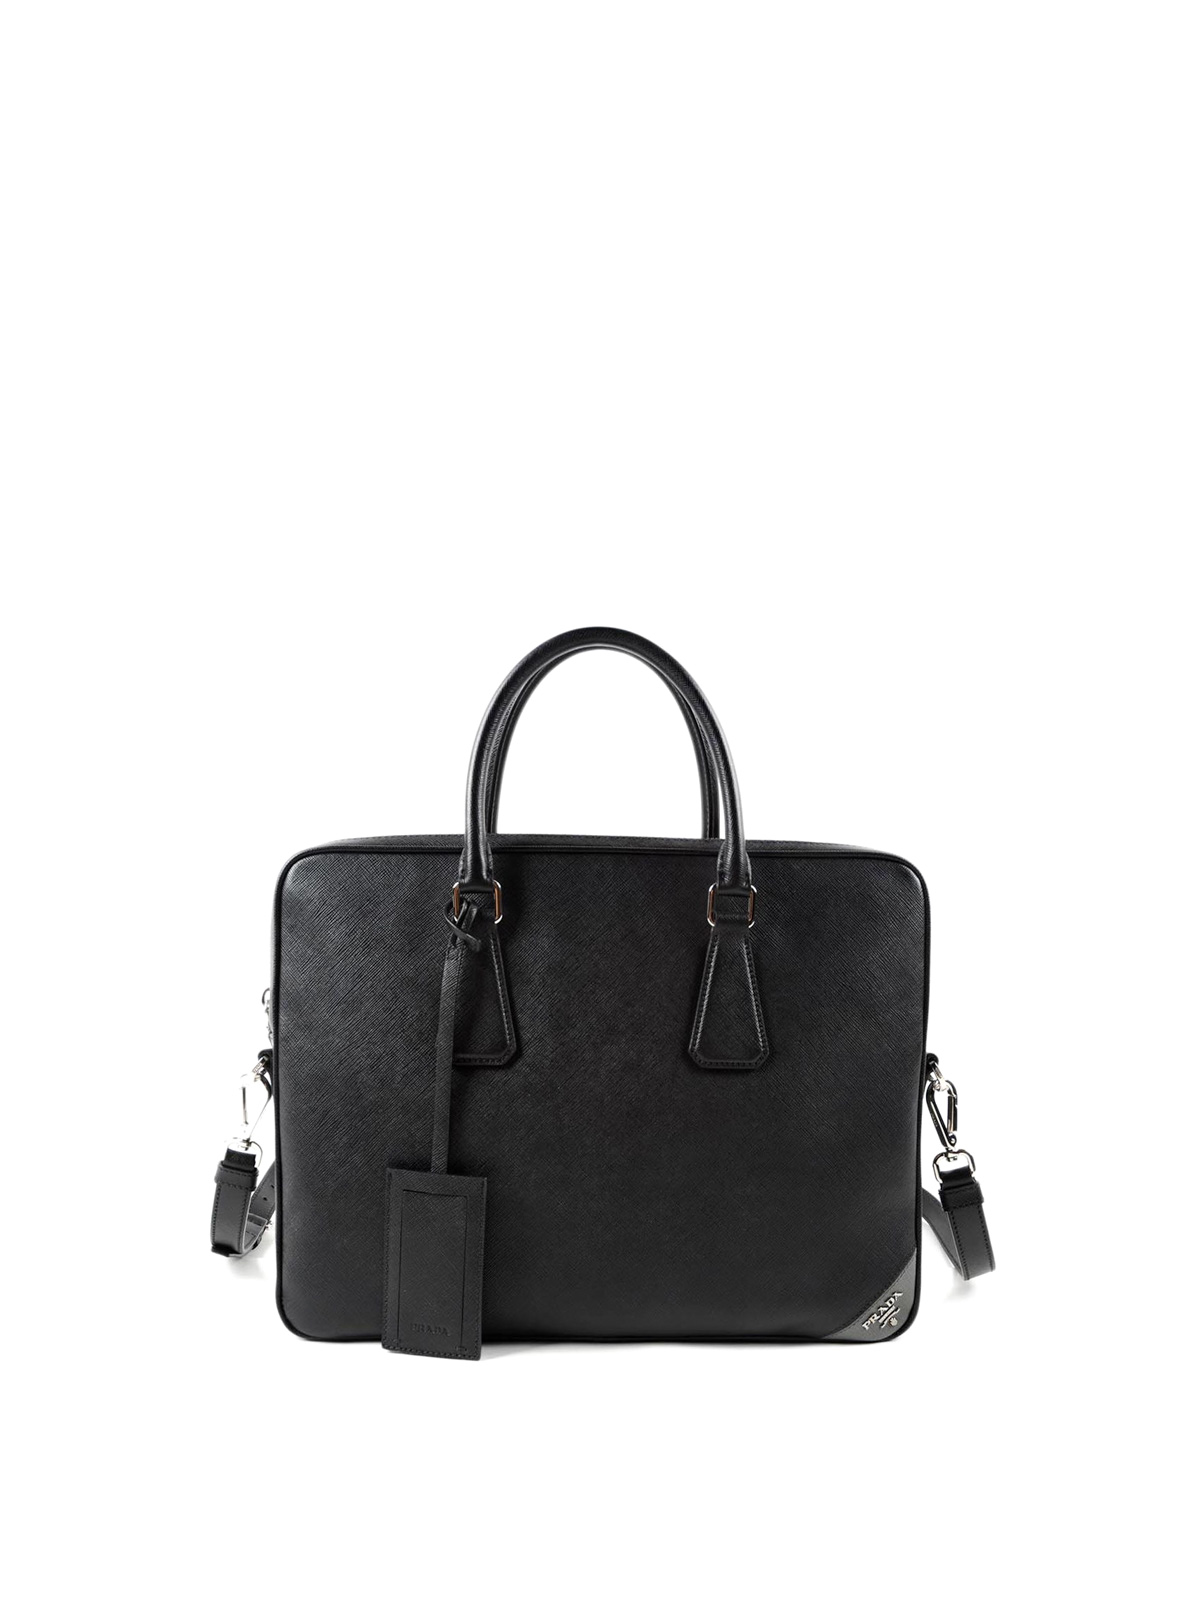 Prada Black Saffiano Leather Briefcase Laptop Bag Prada